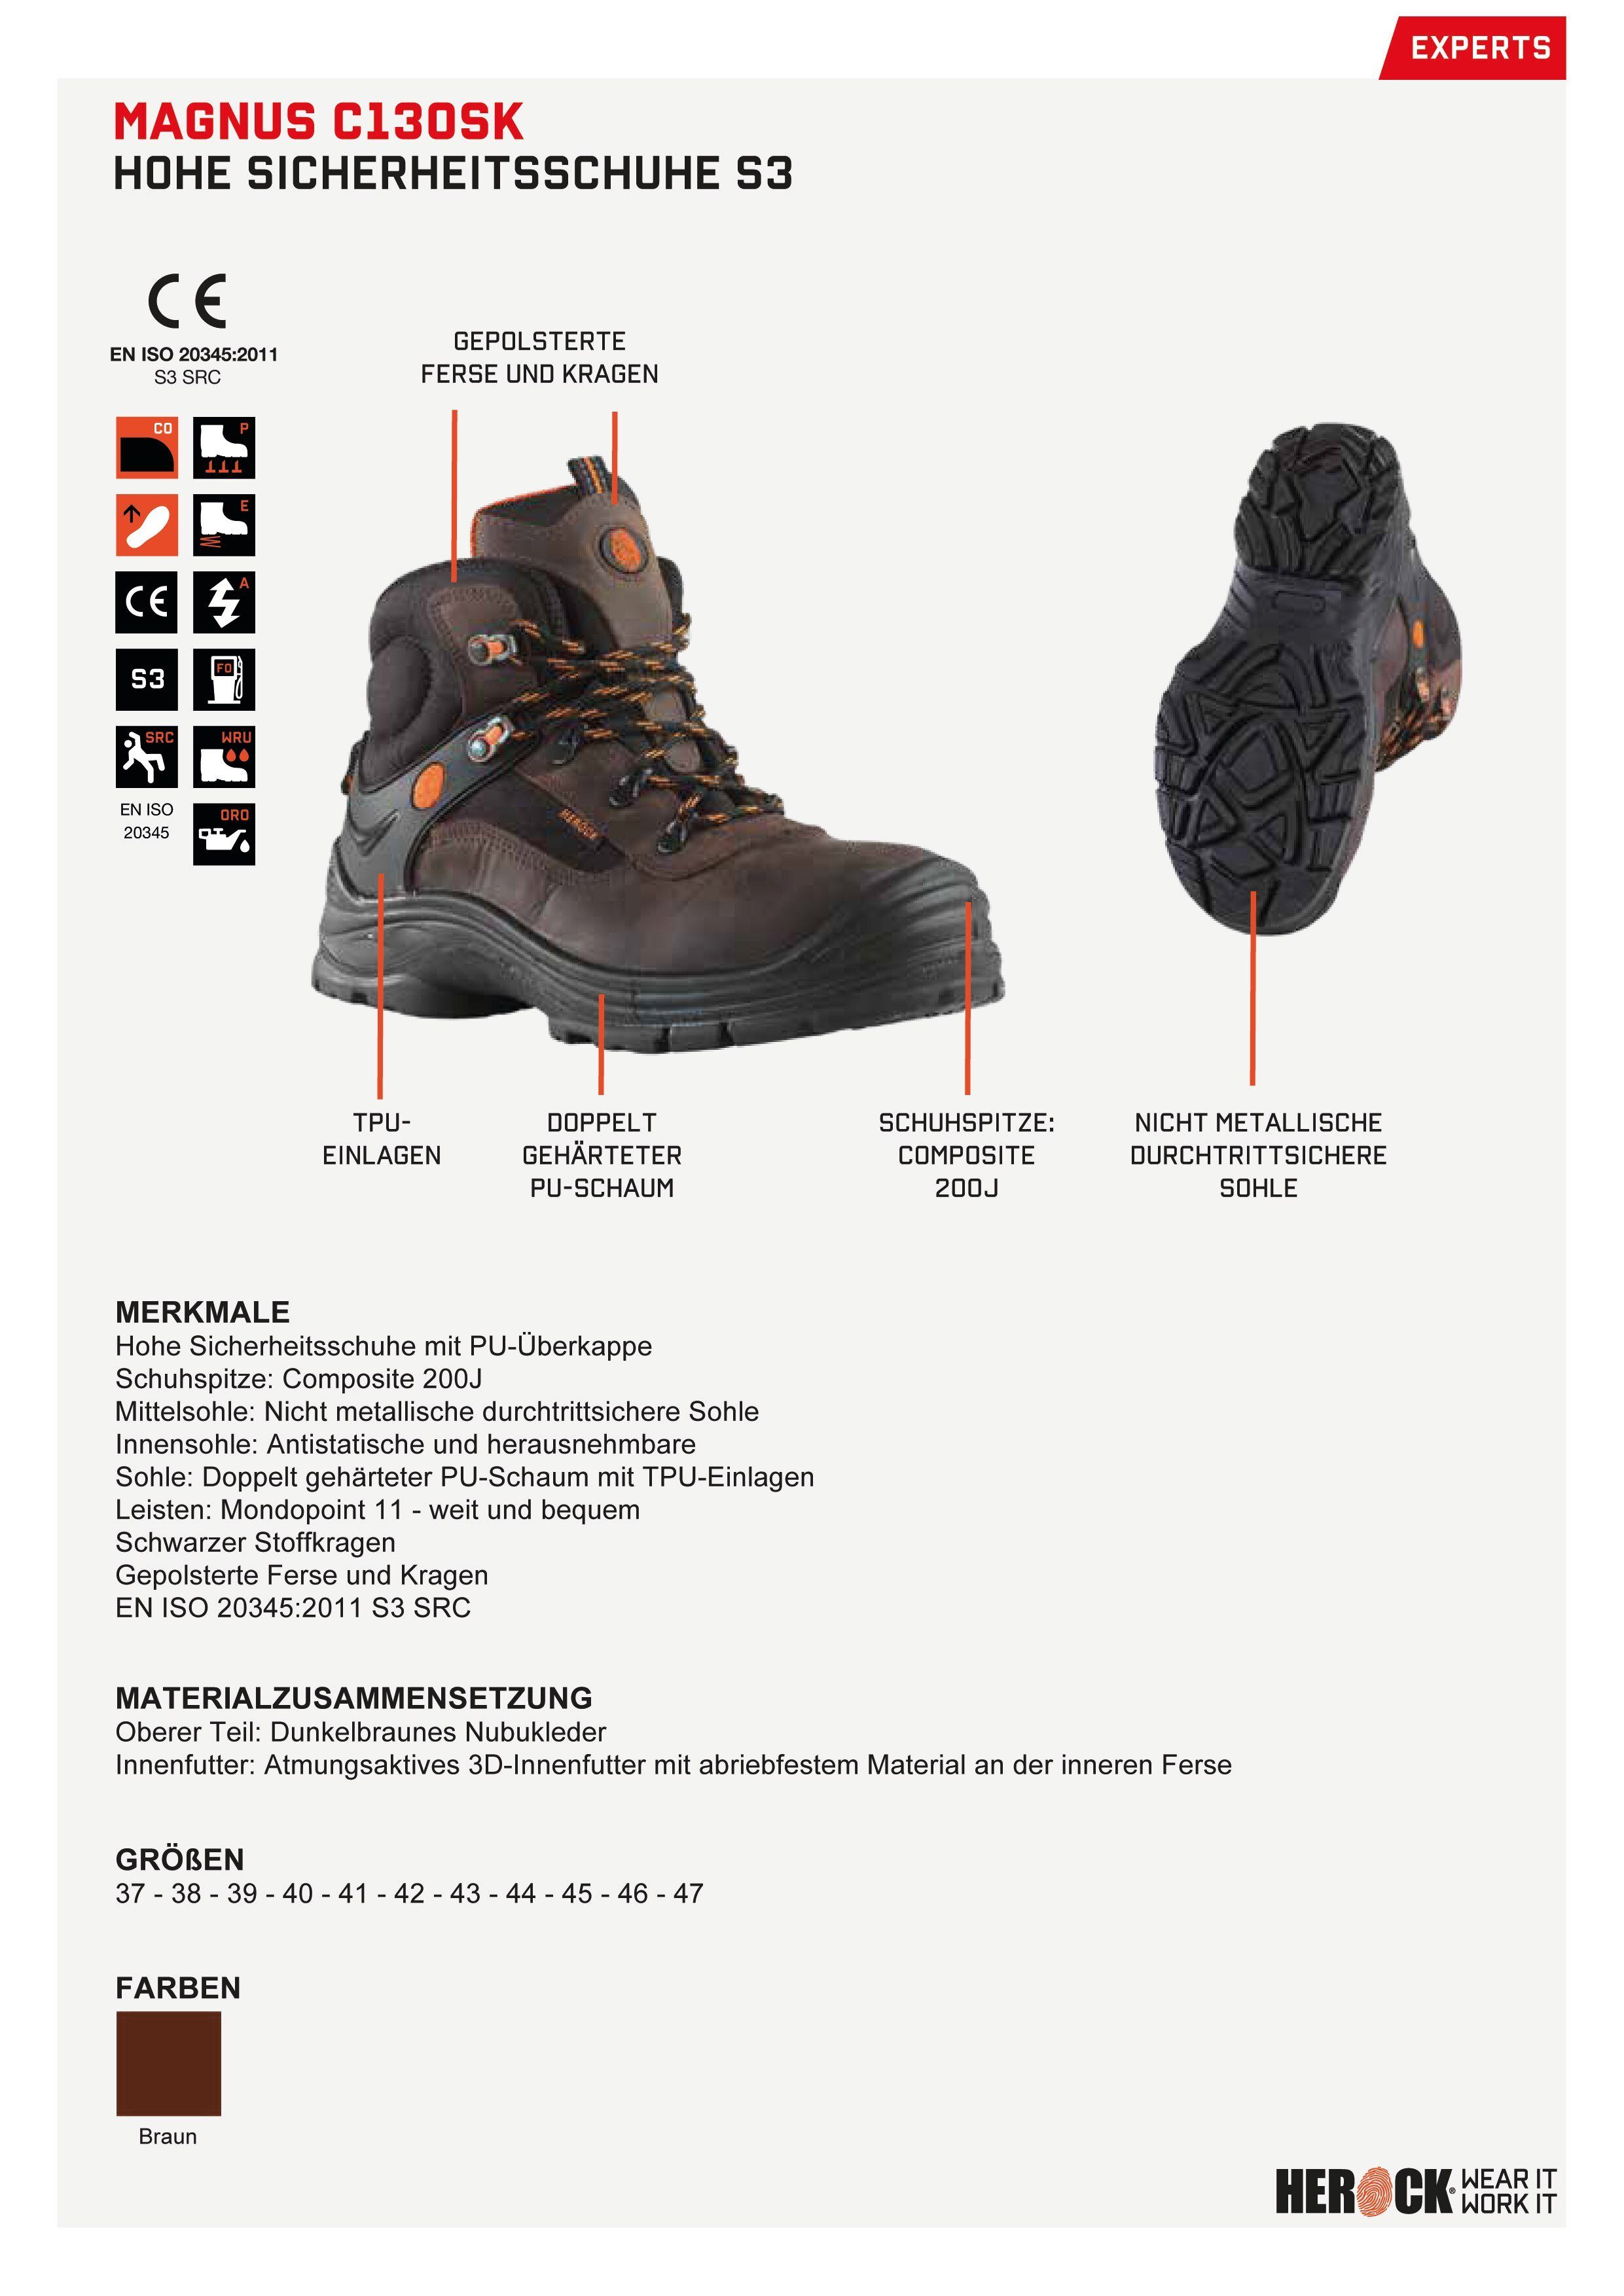 Herock Magnus High Compo Echtes Schuhe Sicherheitsschuh S3 Klasse S3 weit, Leder, durchtrittsicher, nicht-metallisch